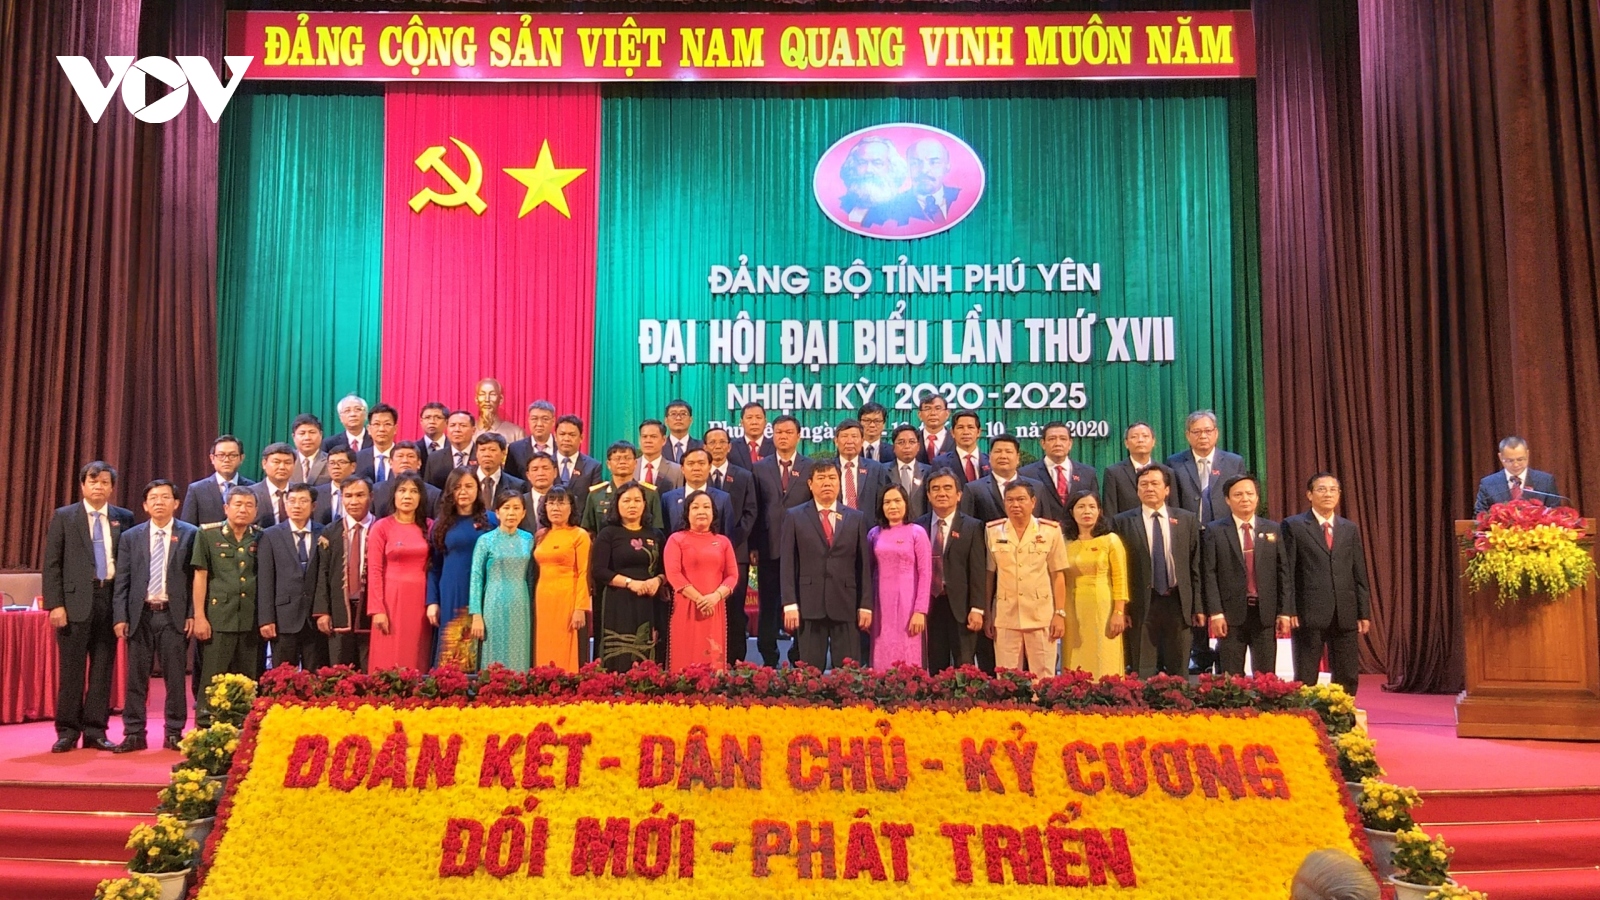 Bế mạc Đại hội Đảng bộ tỉnh Phú Yên: Hướng tới phú cường và yên bình